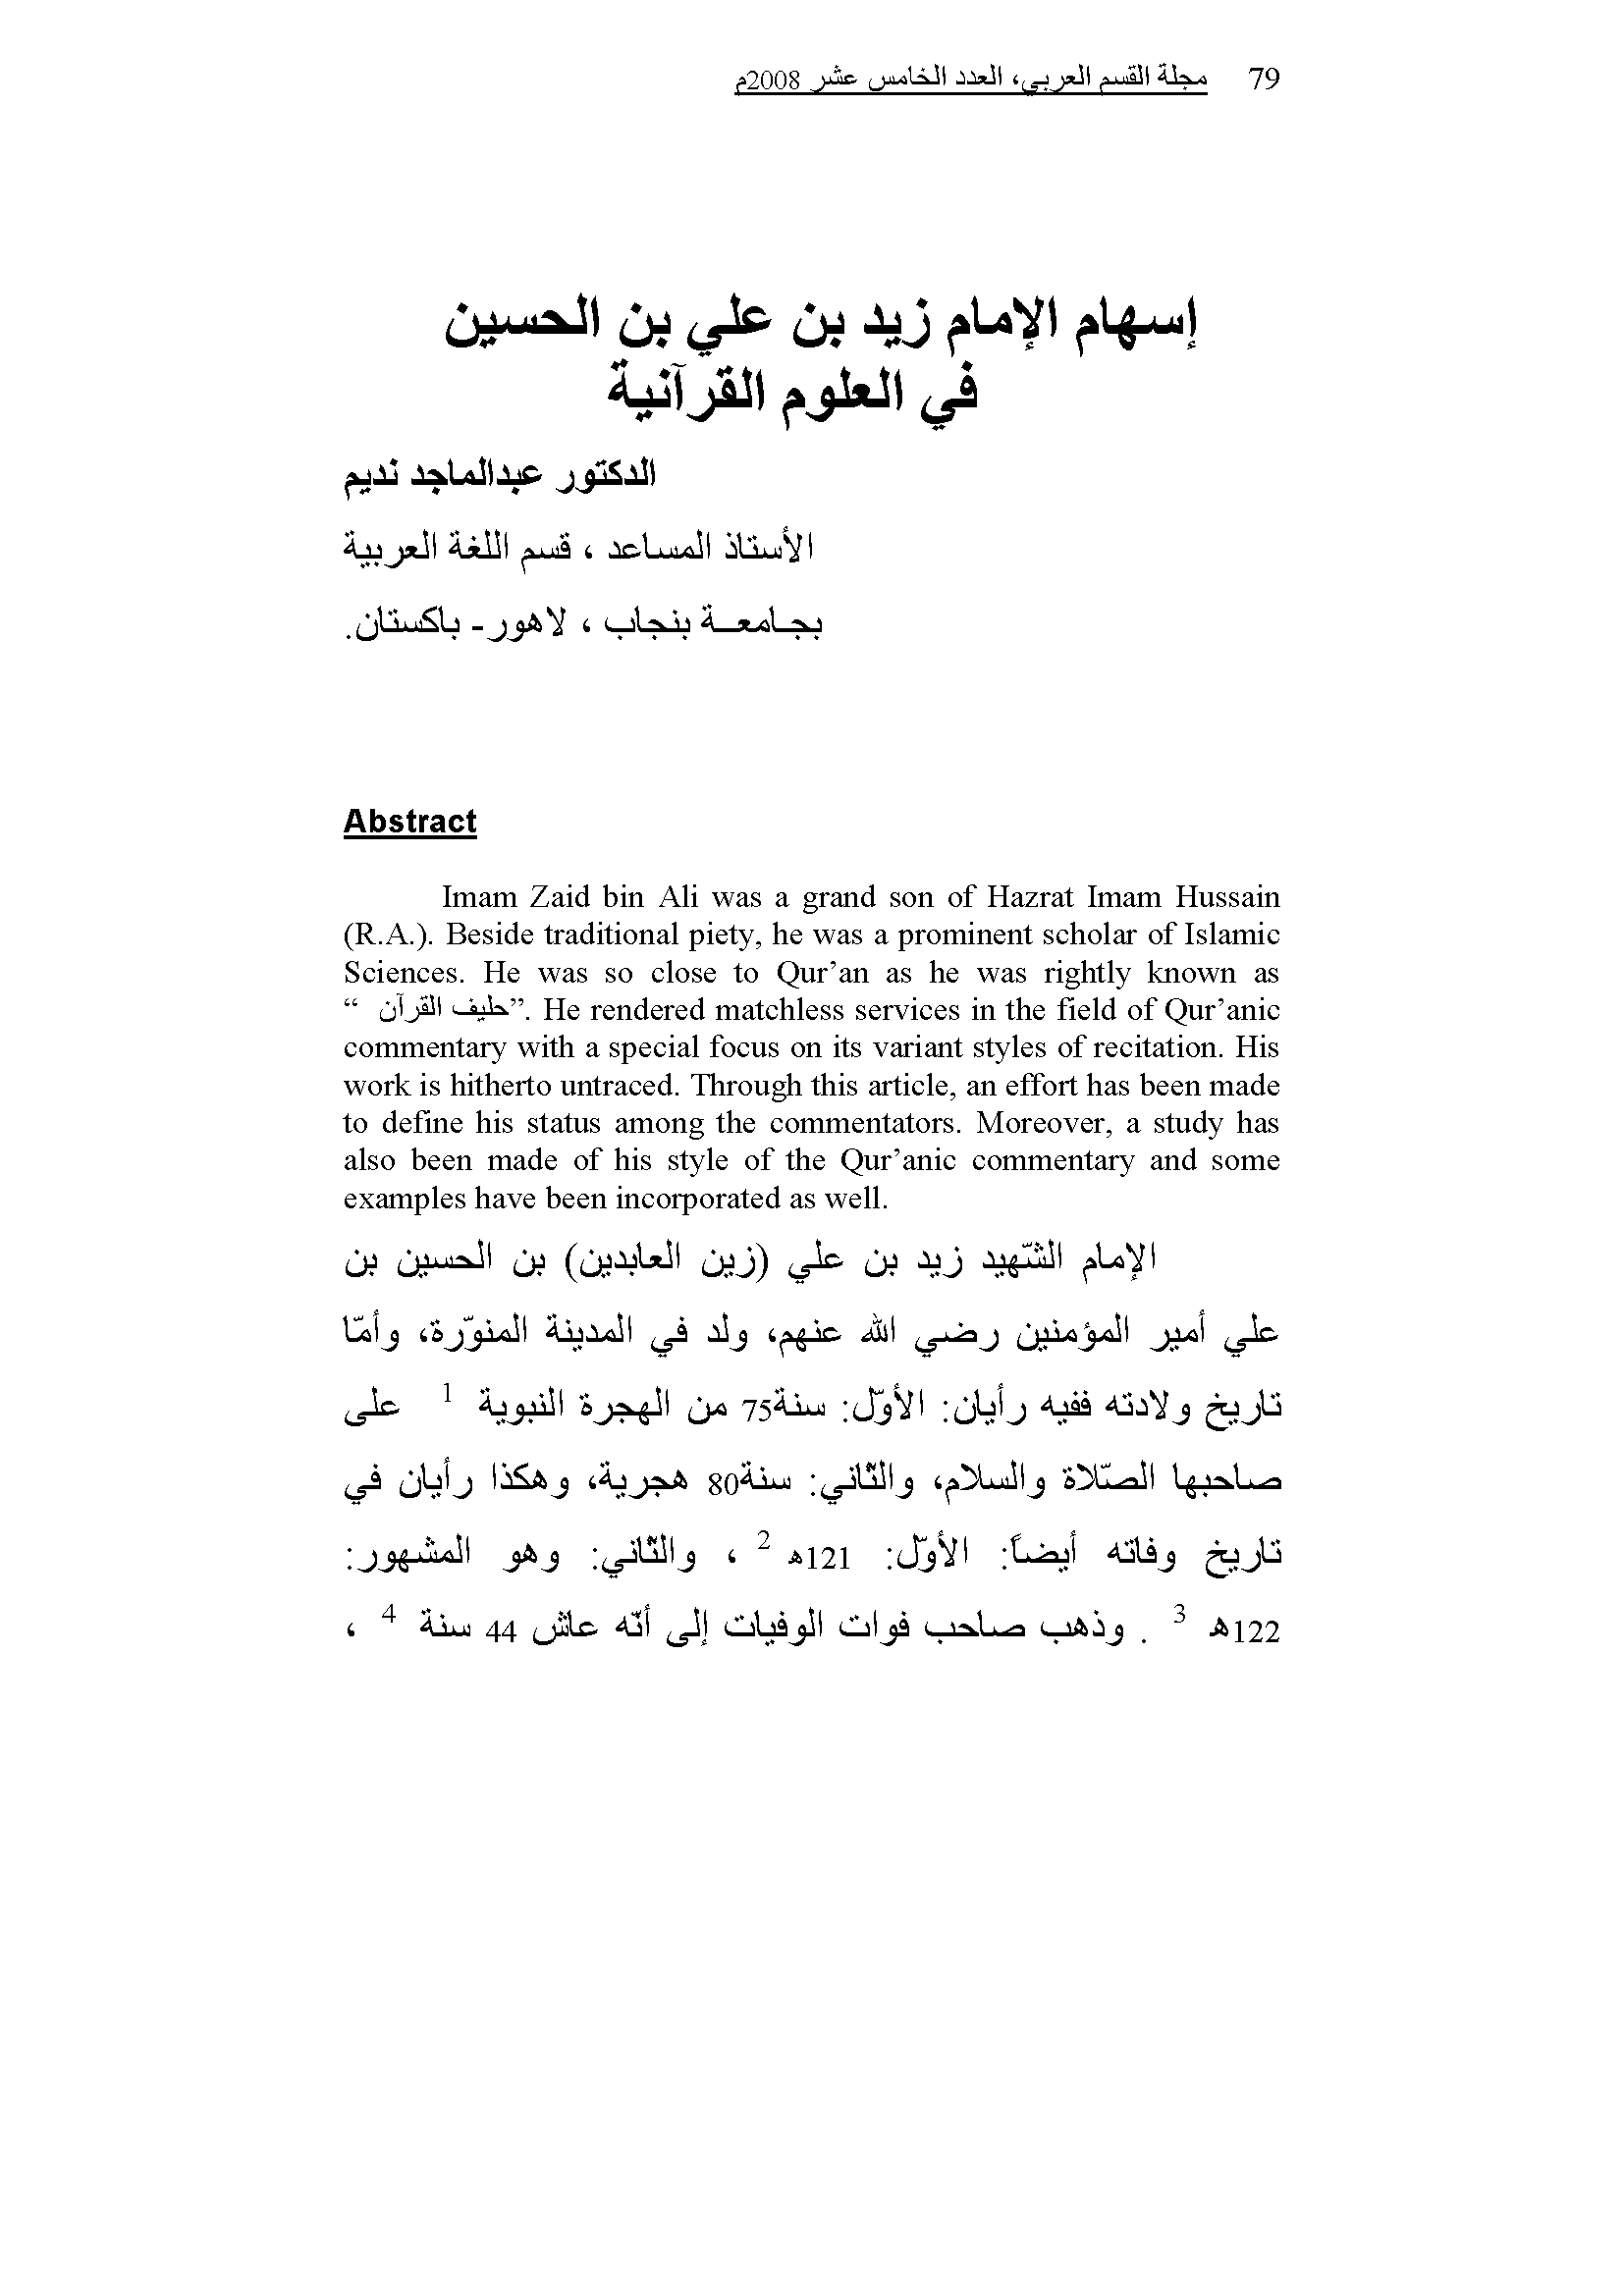 تحميل كتاب إسهام الإمام زيد بن علي بن الحسين في العلوم القرآنية لـِ: الدكتور عبد الماجد نديم